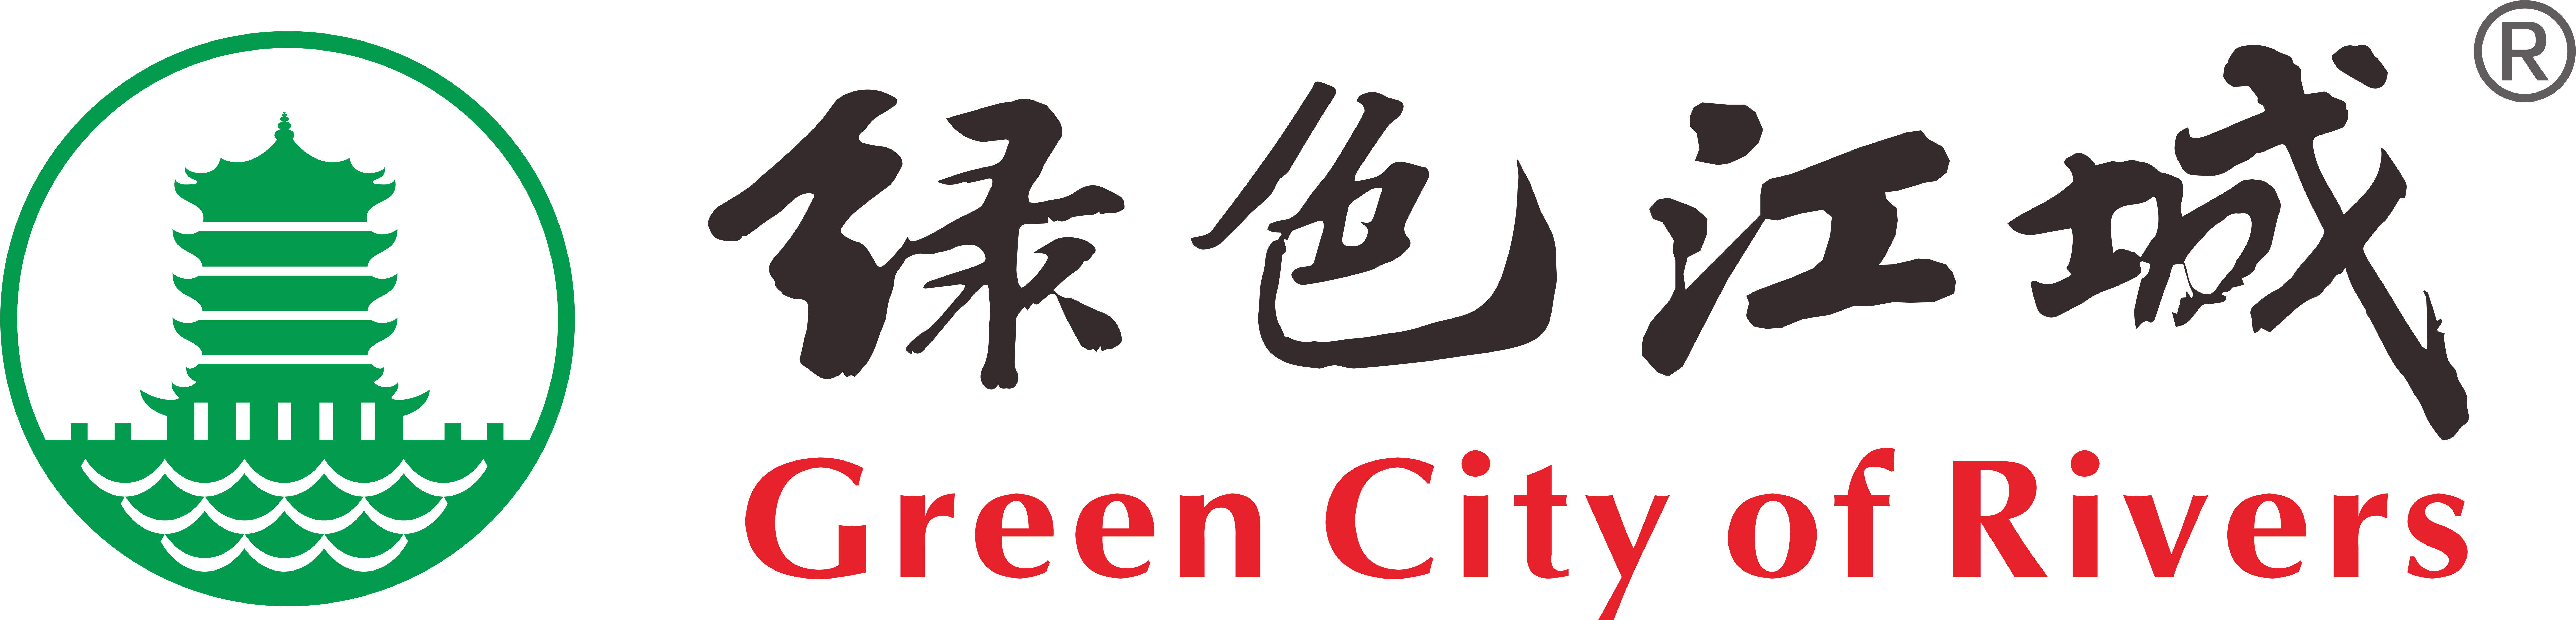 项目活动-武汉环保社会组织“绿色江城”